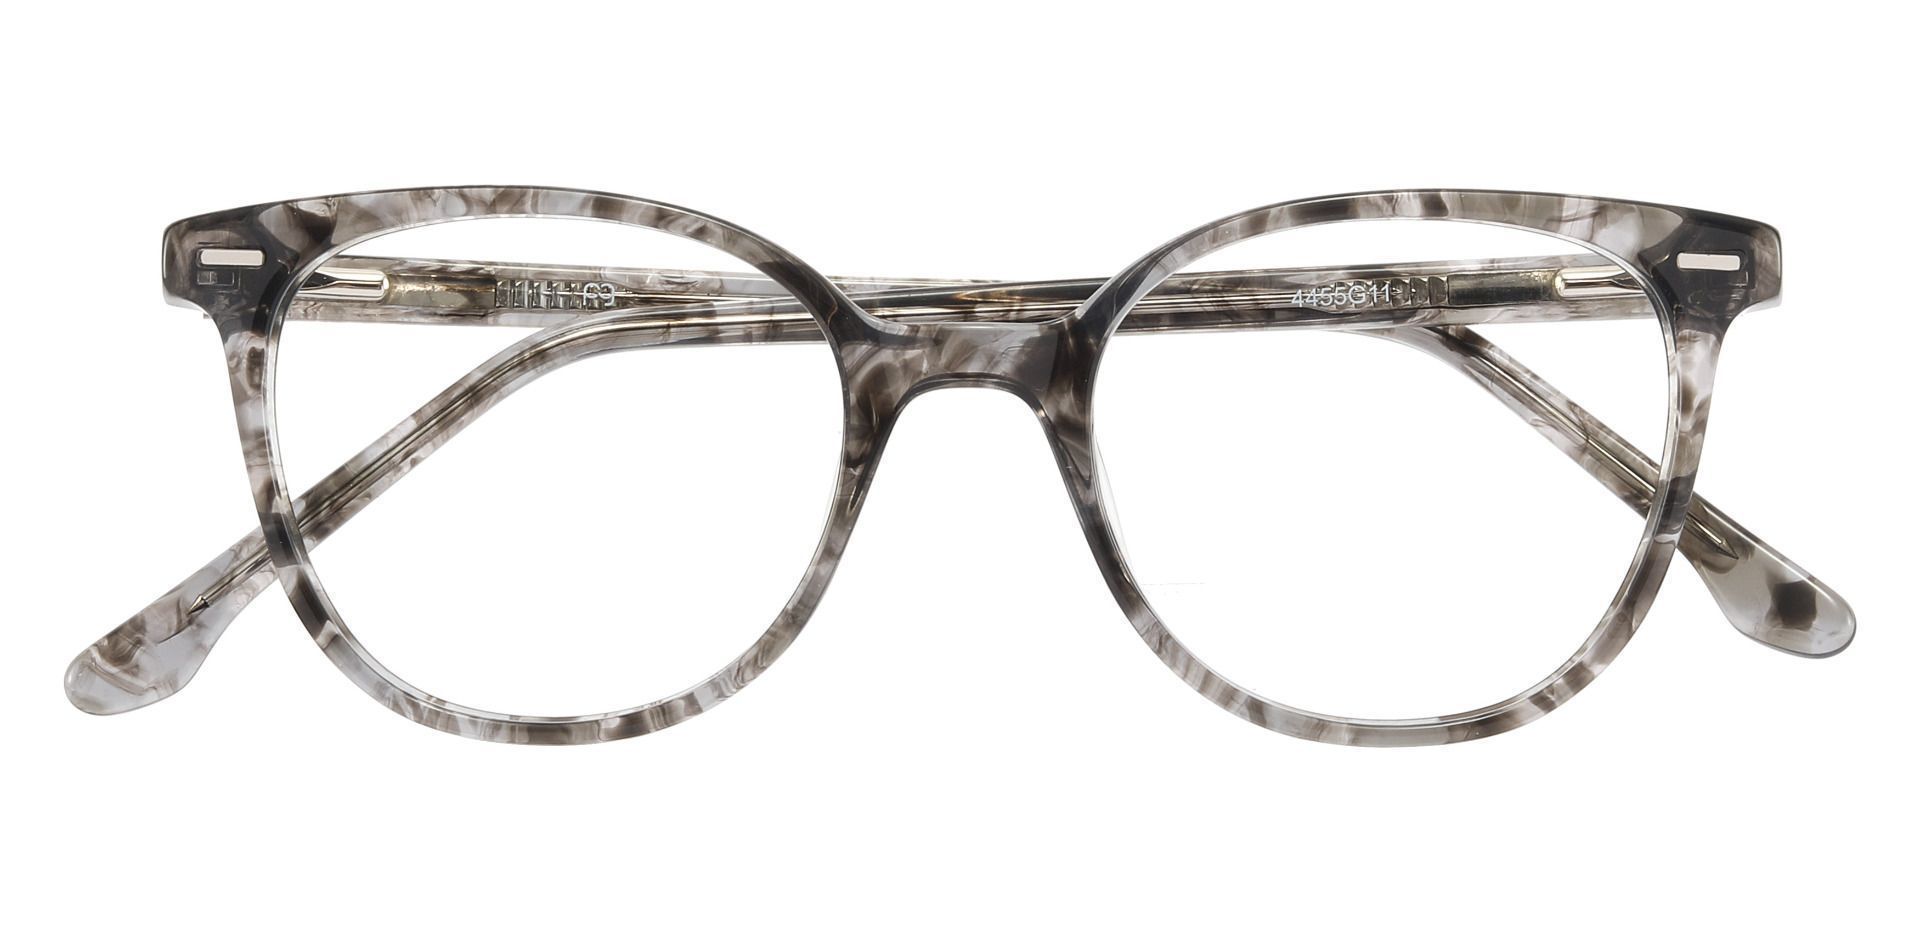 Chili Oval Non-Rx Glasses - Gray